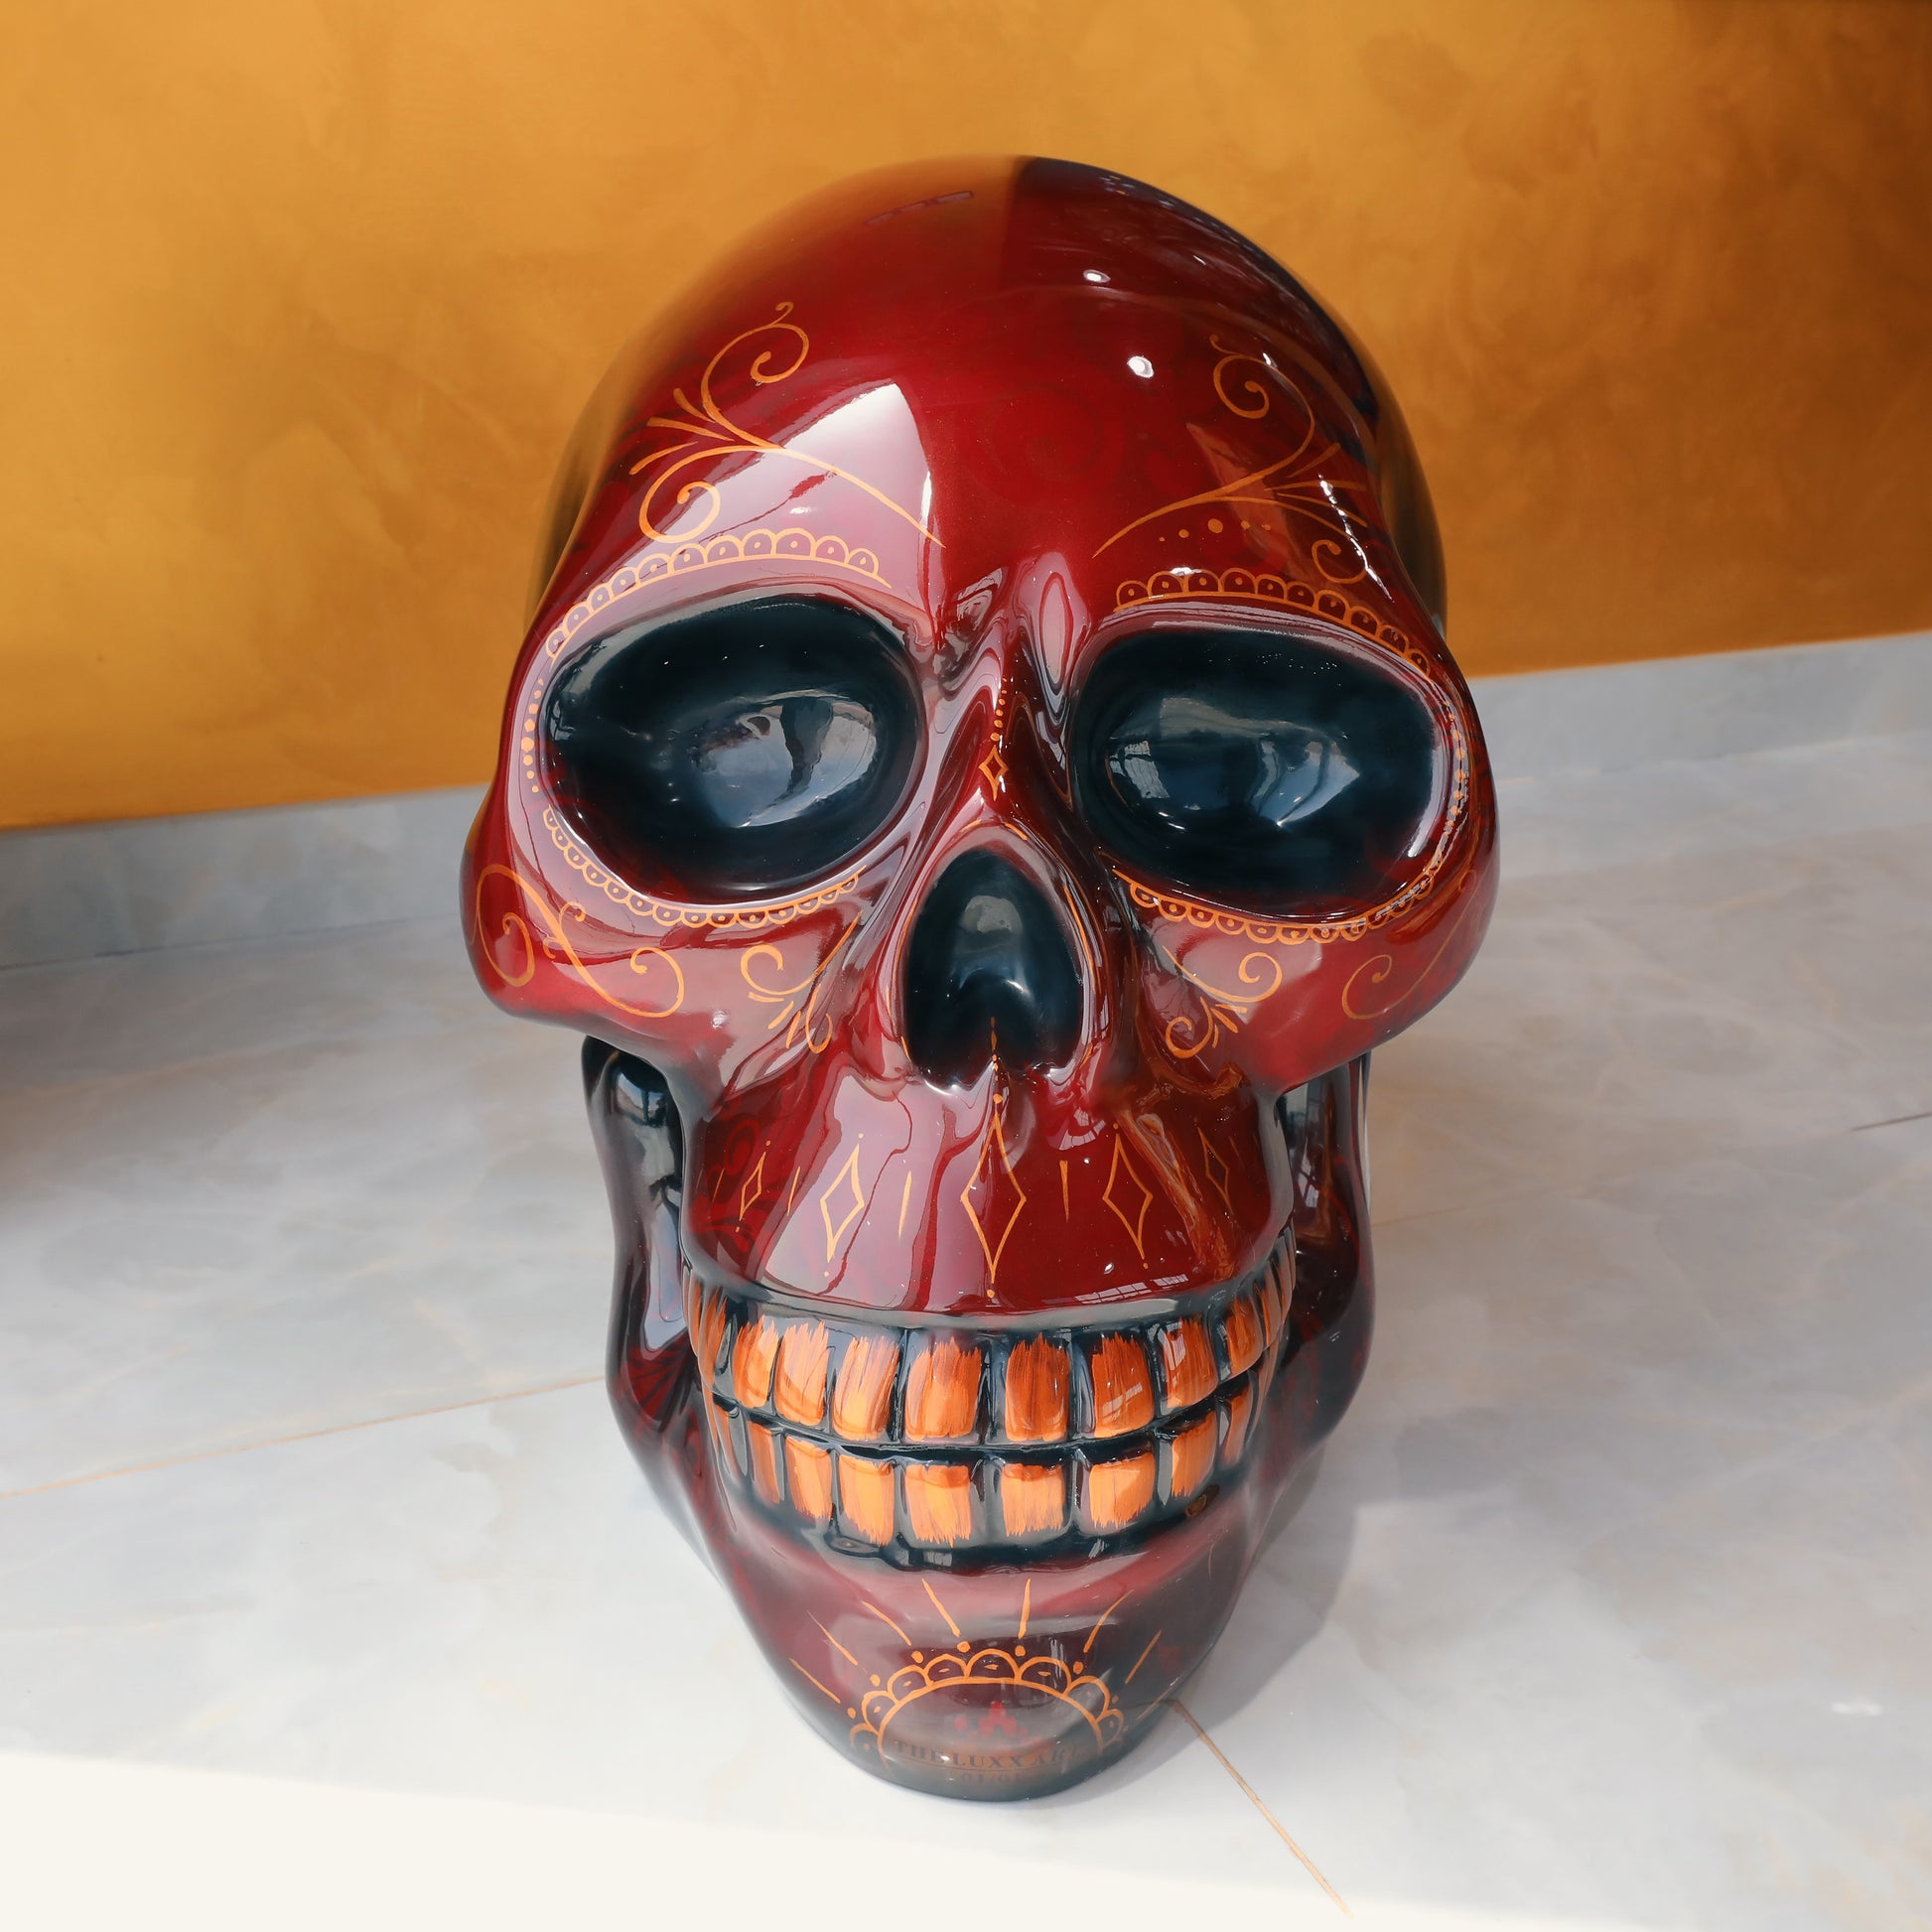 Skull sculpture art